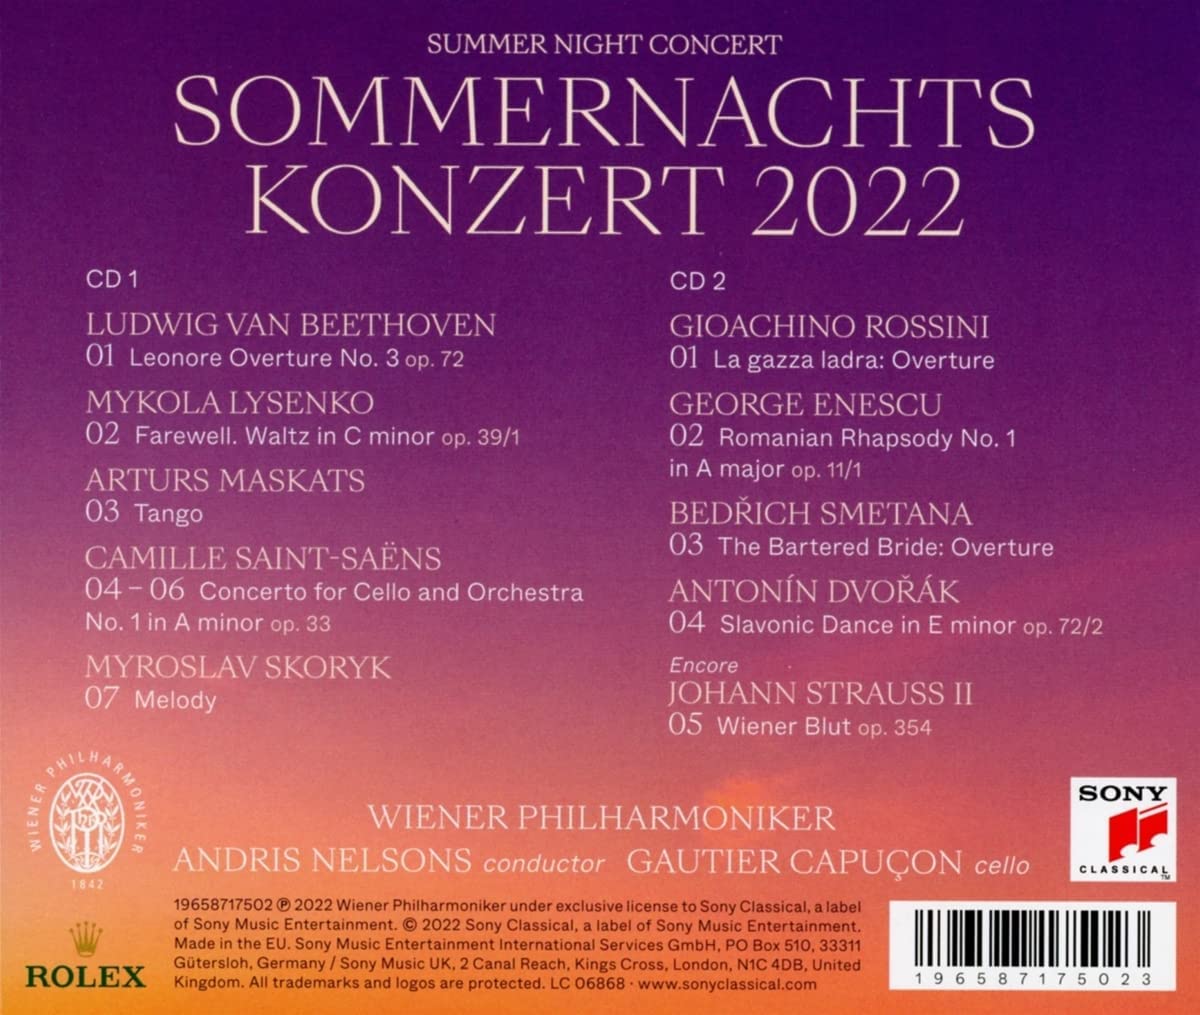 Sommernachtskonzert 2022 / Summer Night Concert 2022 | Andris Nelsons, Wiener Philharmoniker image1